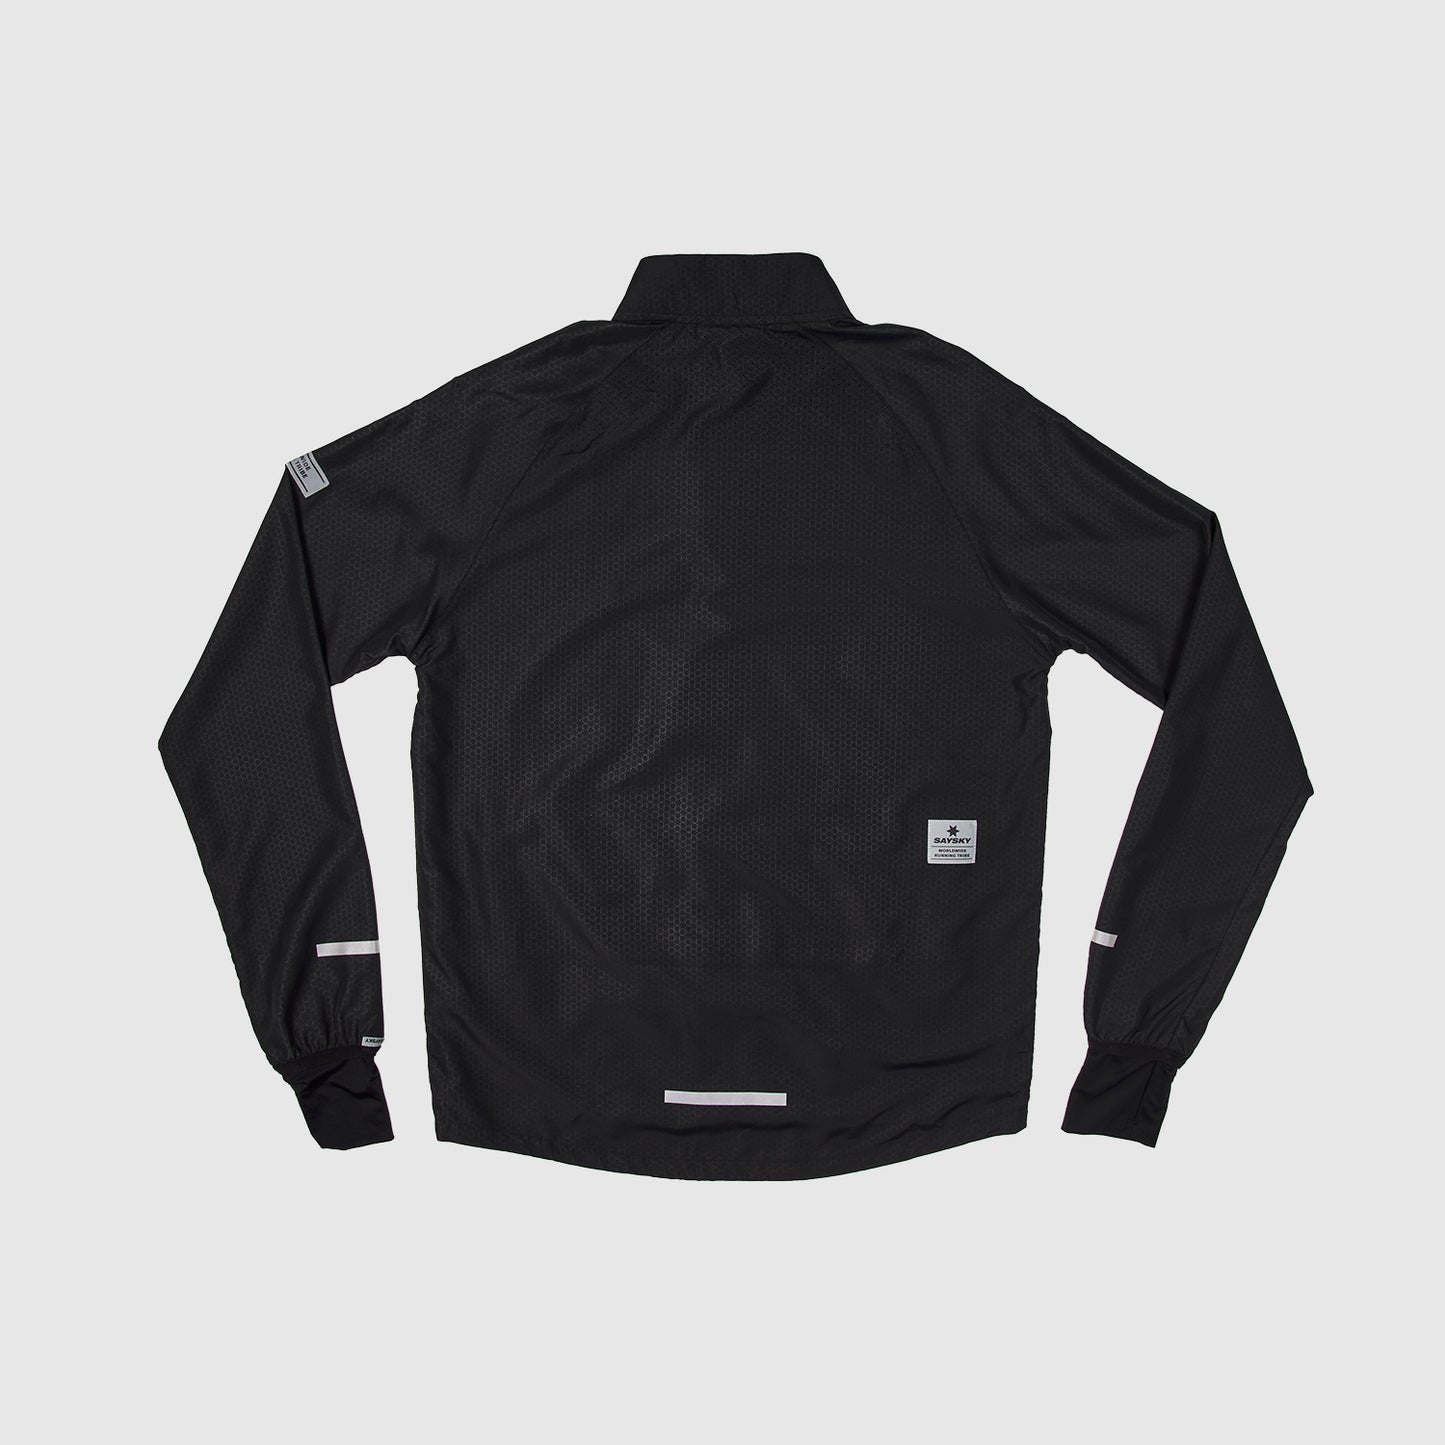 ランニングジャケット XMRJA01 Clean Pace Jacket - Black [ユニセックス]